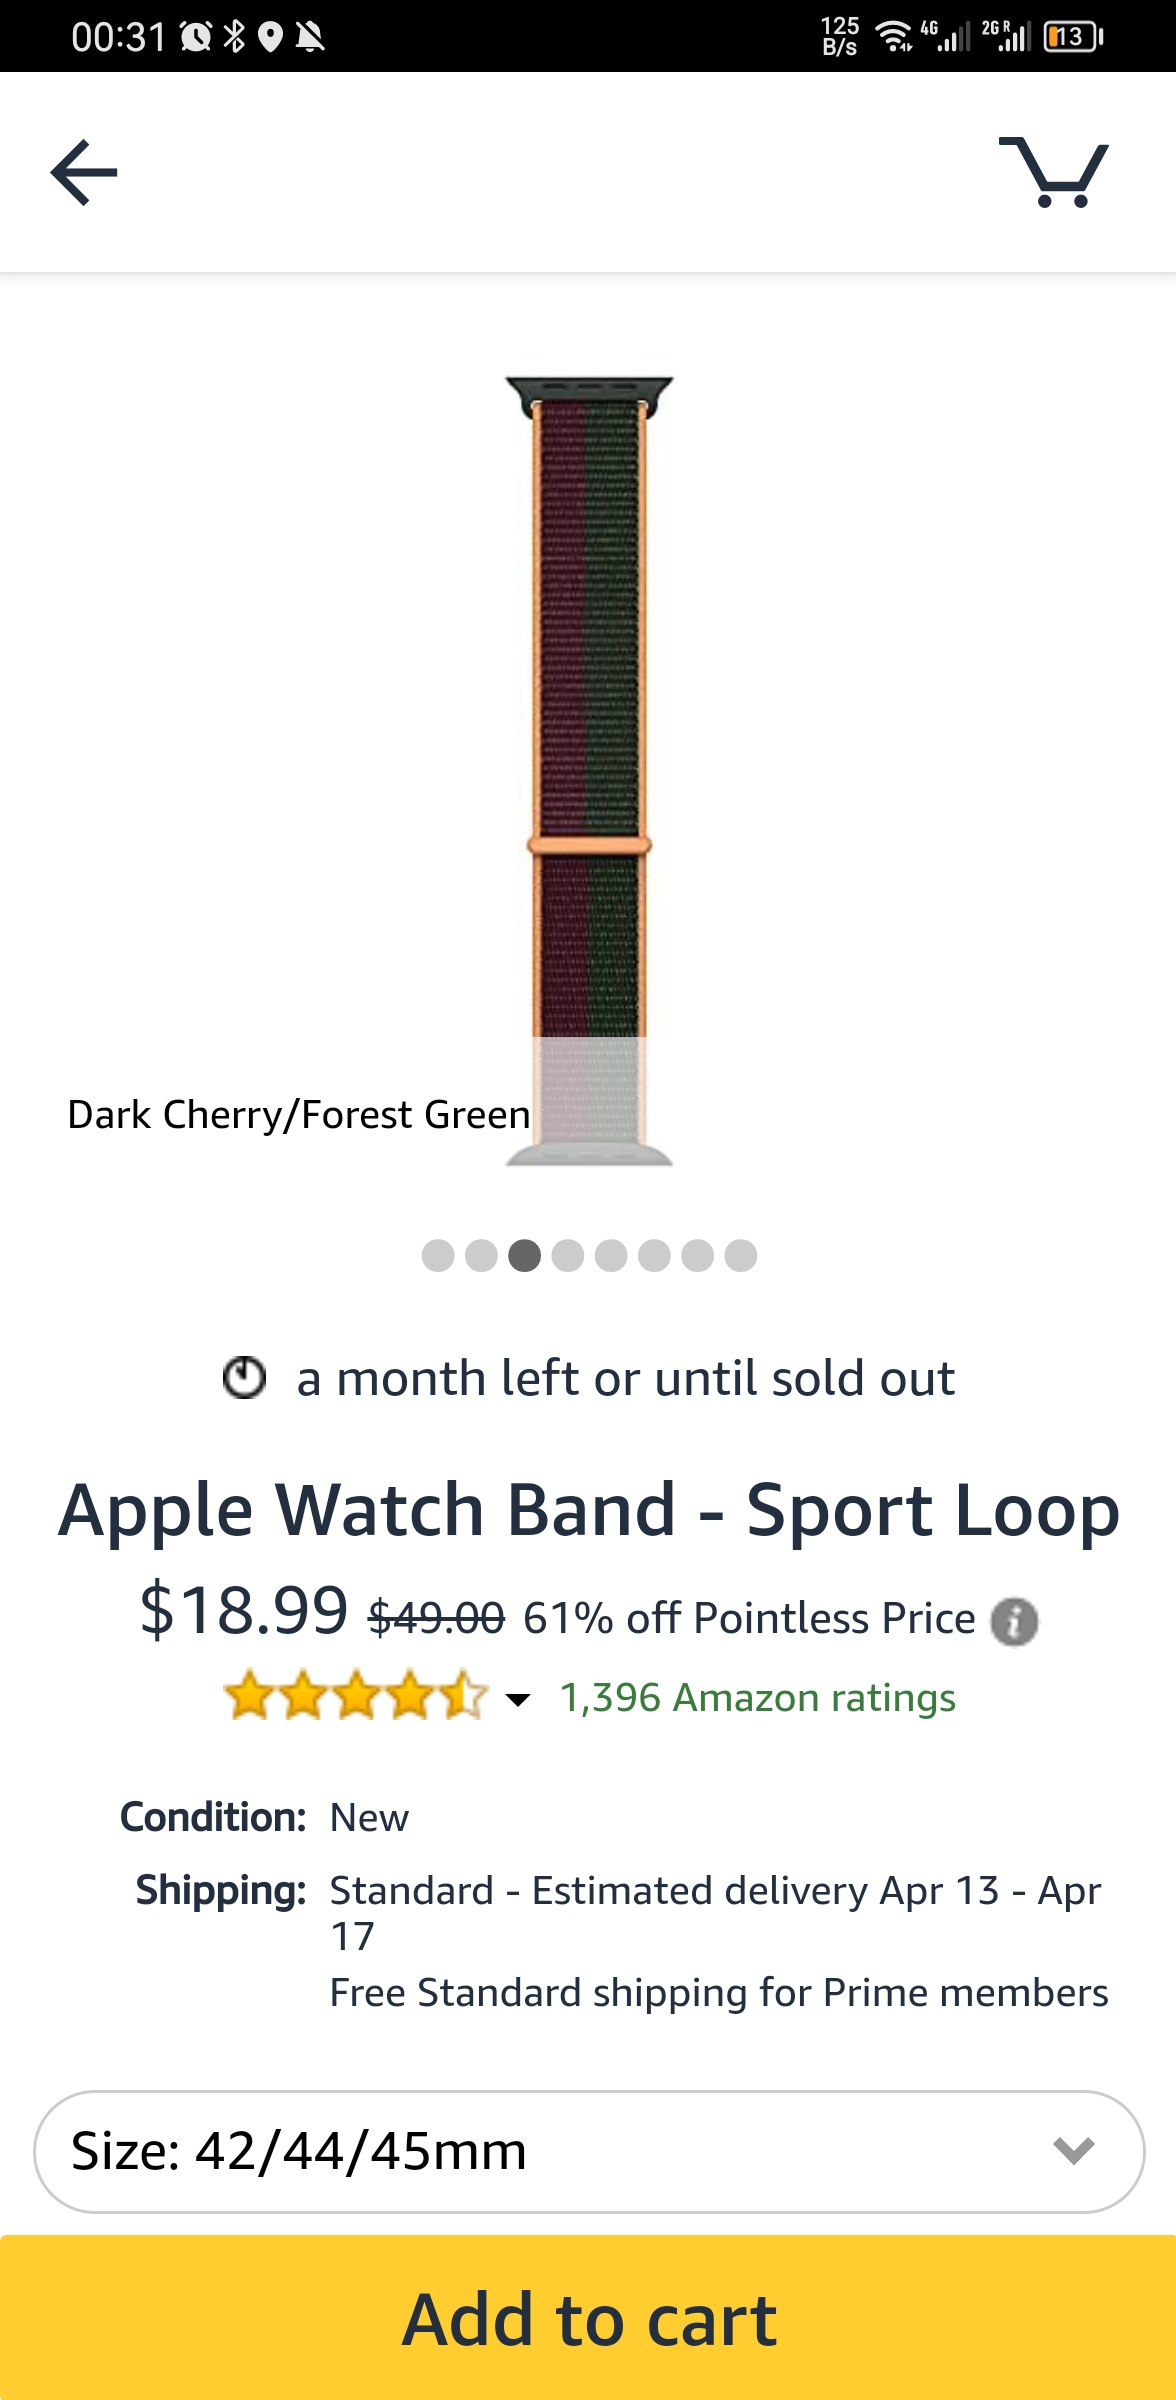 Apple Watch Band - Sport Loop